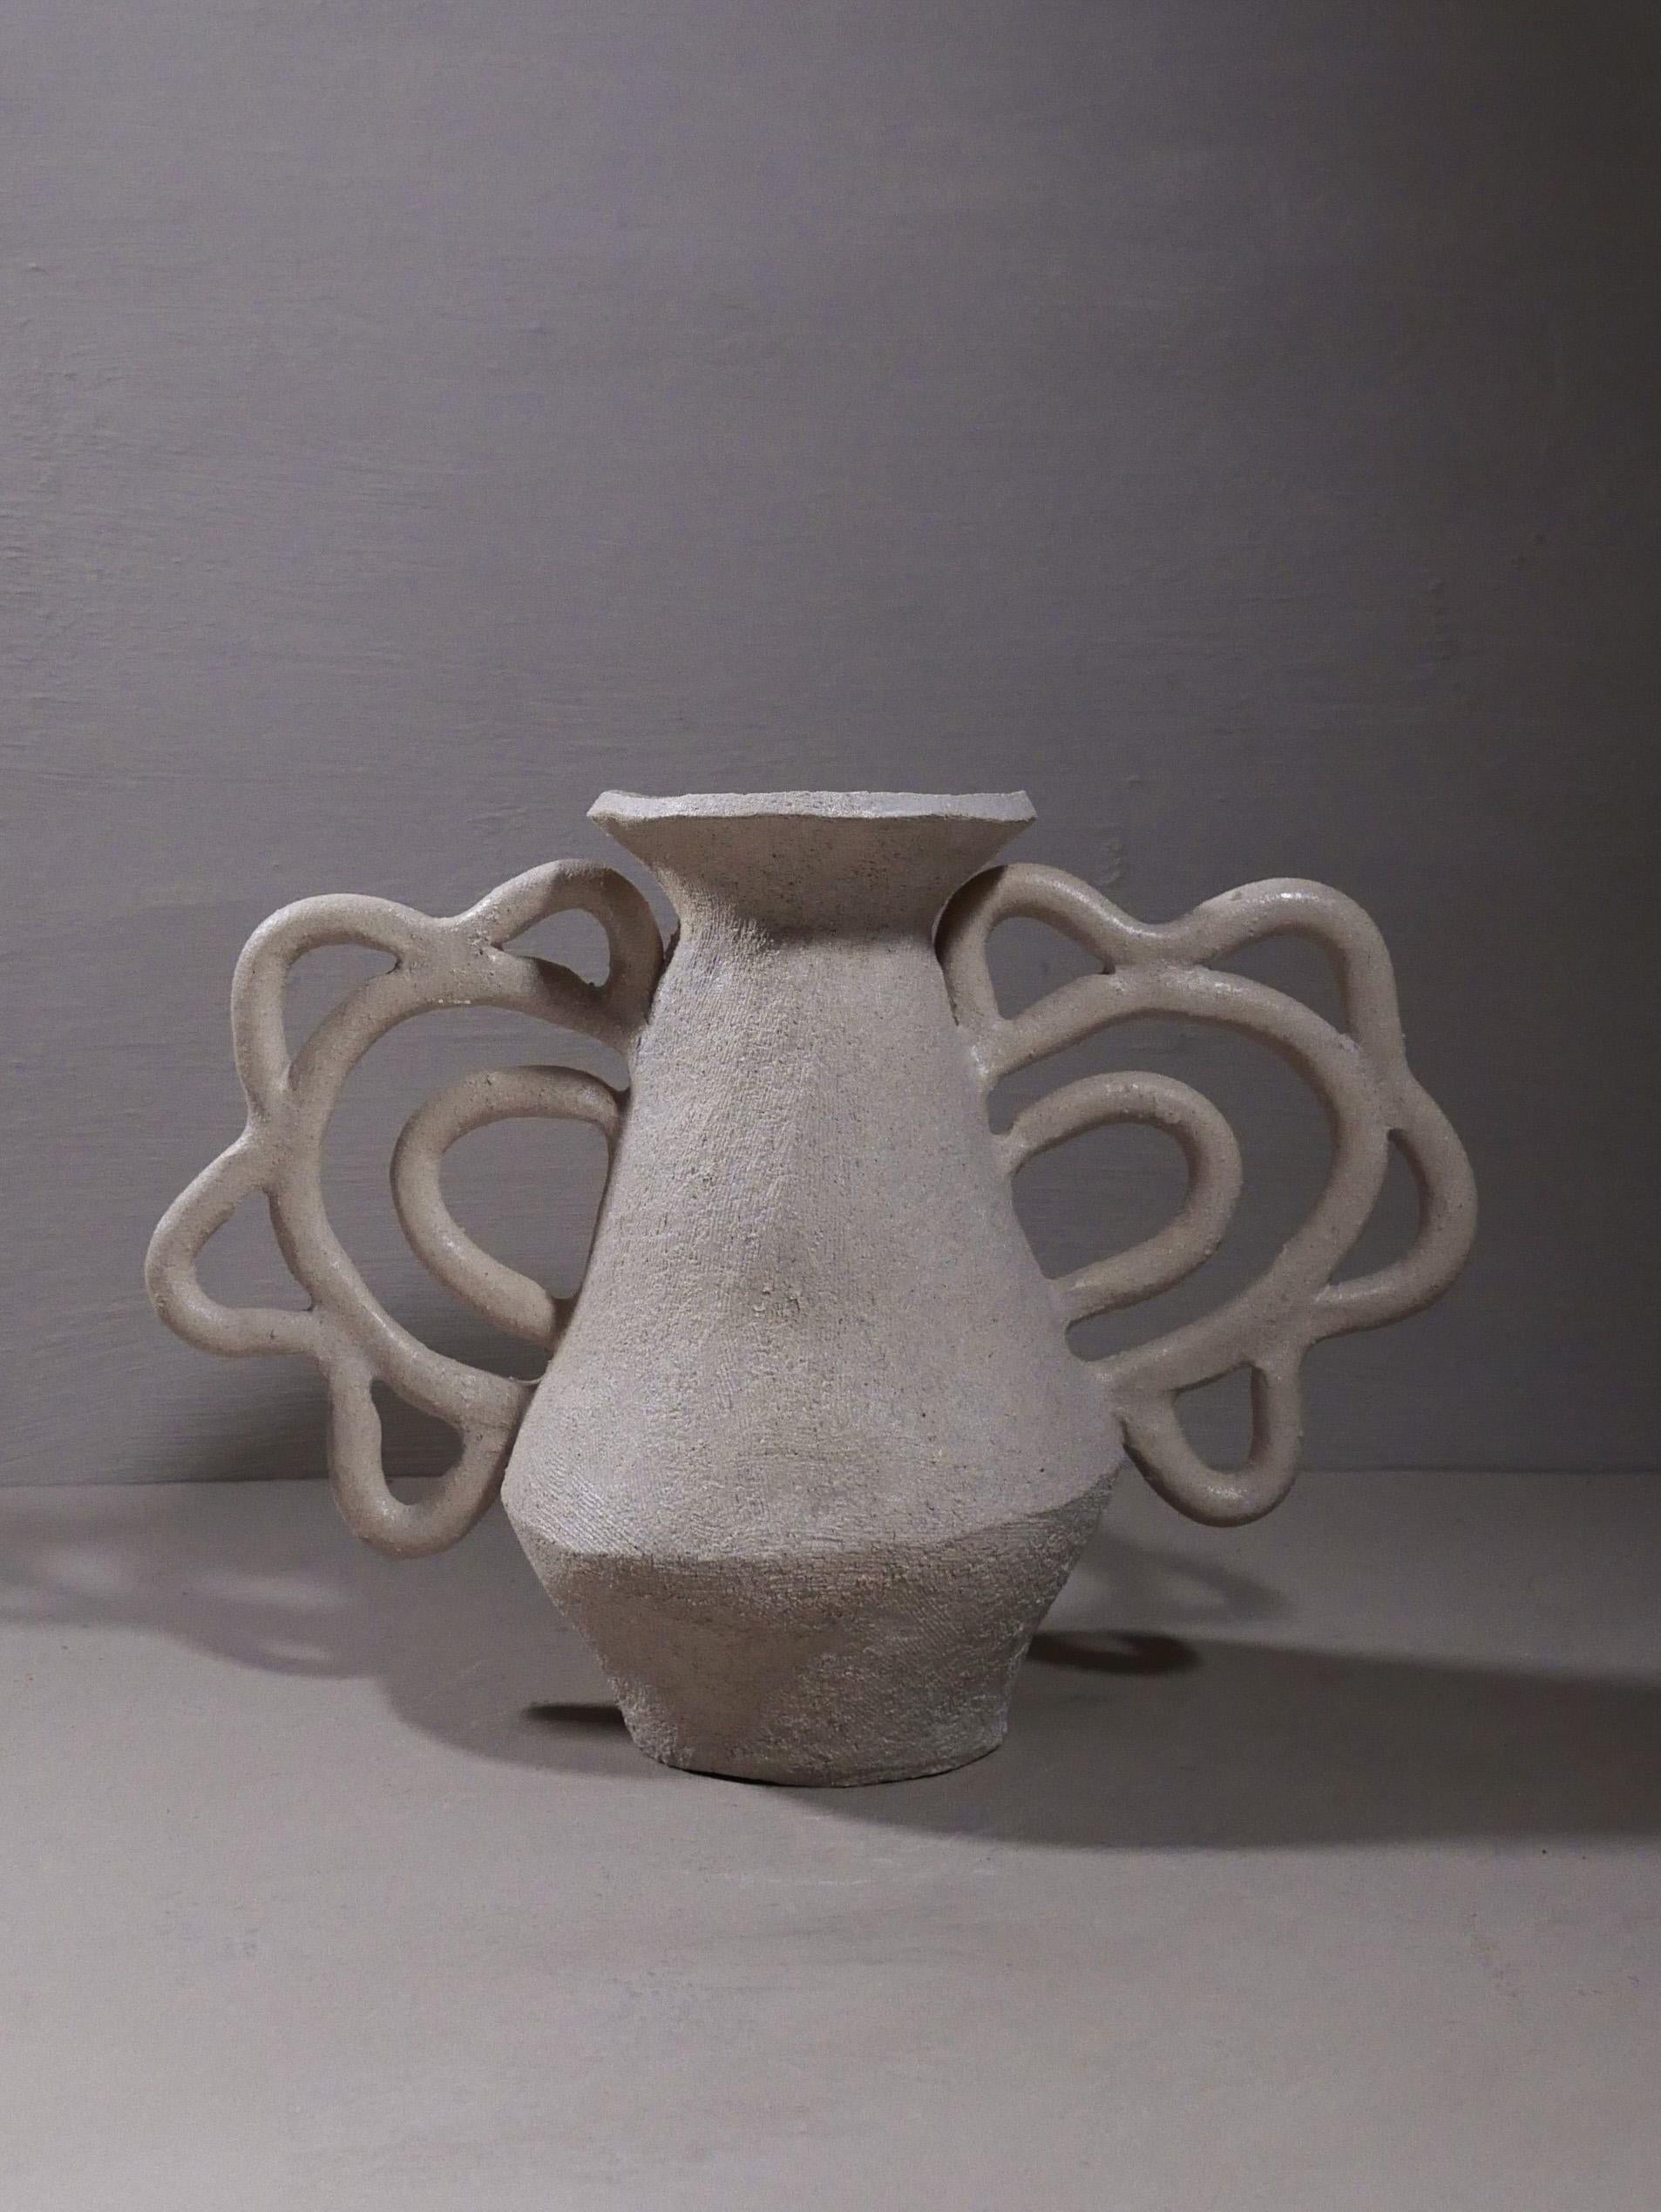 Vase unique avec deux anses très complexes en forme de dentelle, fabriqué à la main par l'artiste Sophie Agullo en Espagne.

Finition souple, blanc chaud mat à l'extérieur, avec un glaçage à l'intérieur qui le rend imperméable à l'eau.